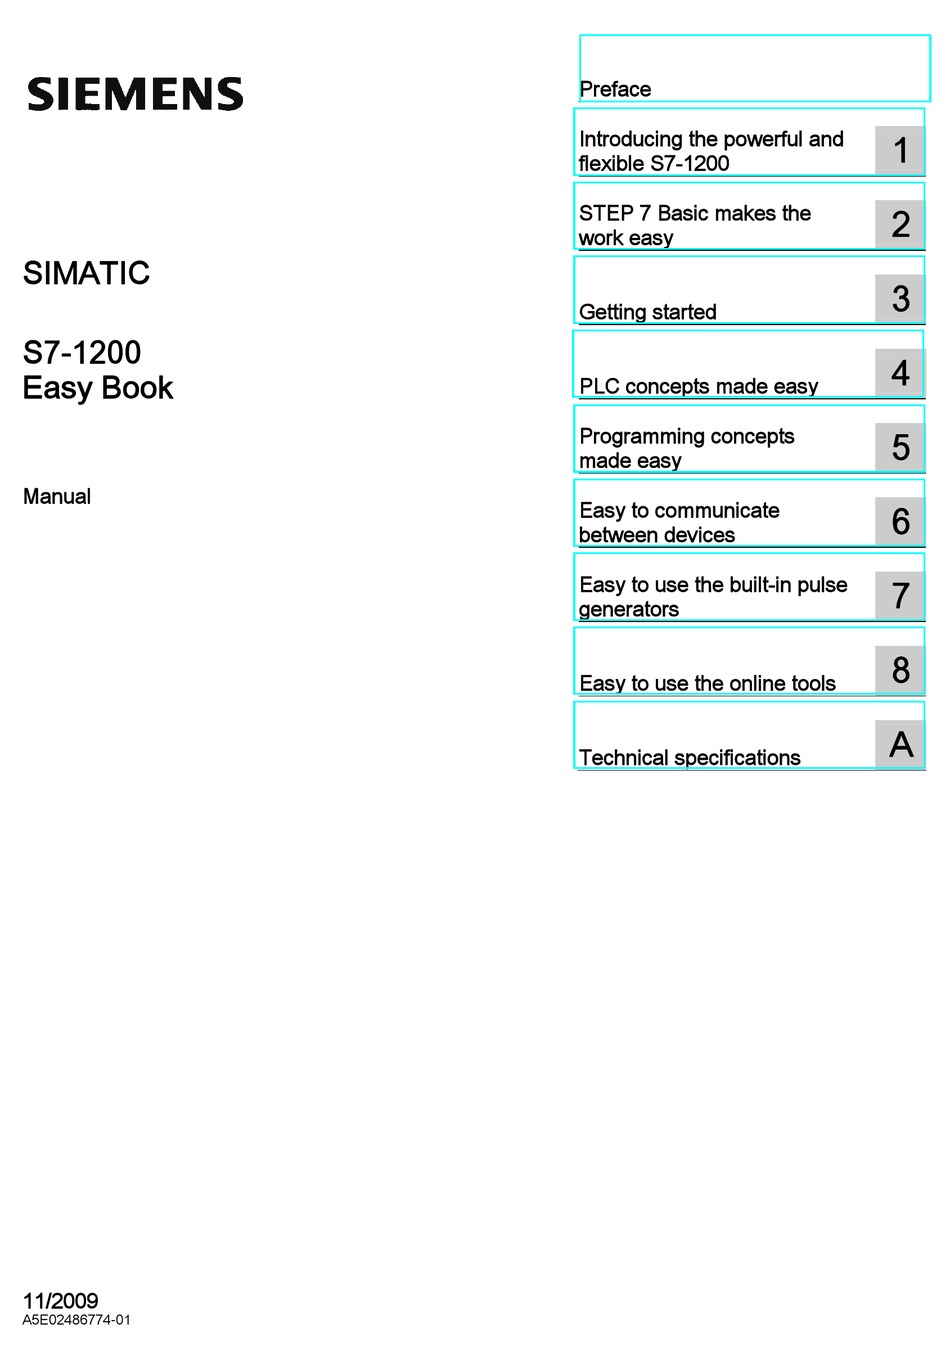 siemens simatic s7-1200 manual